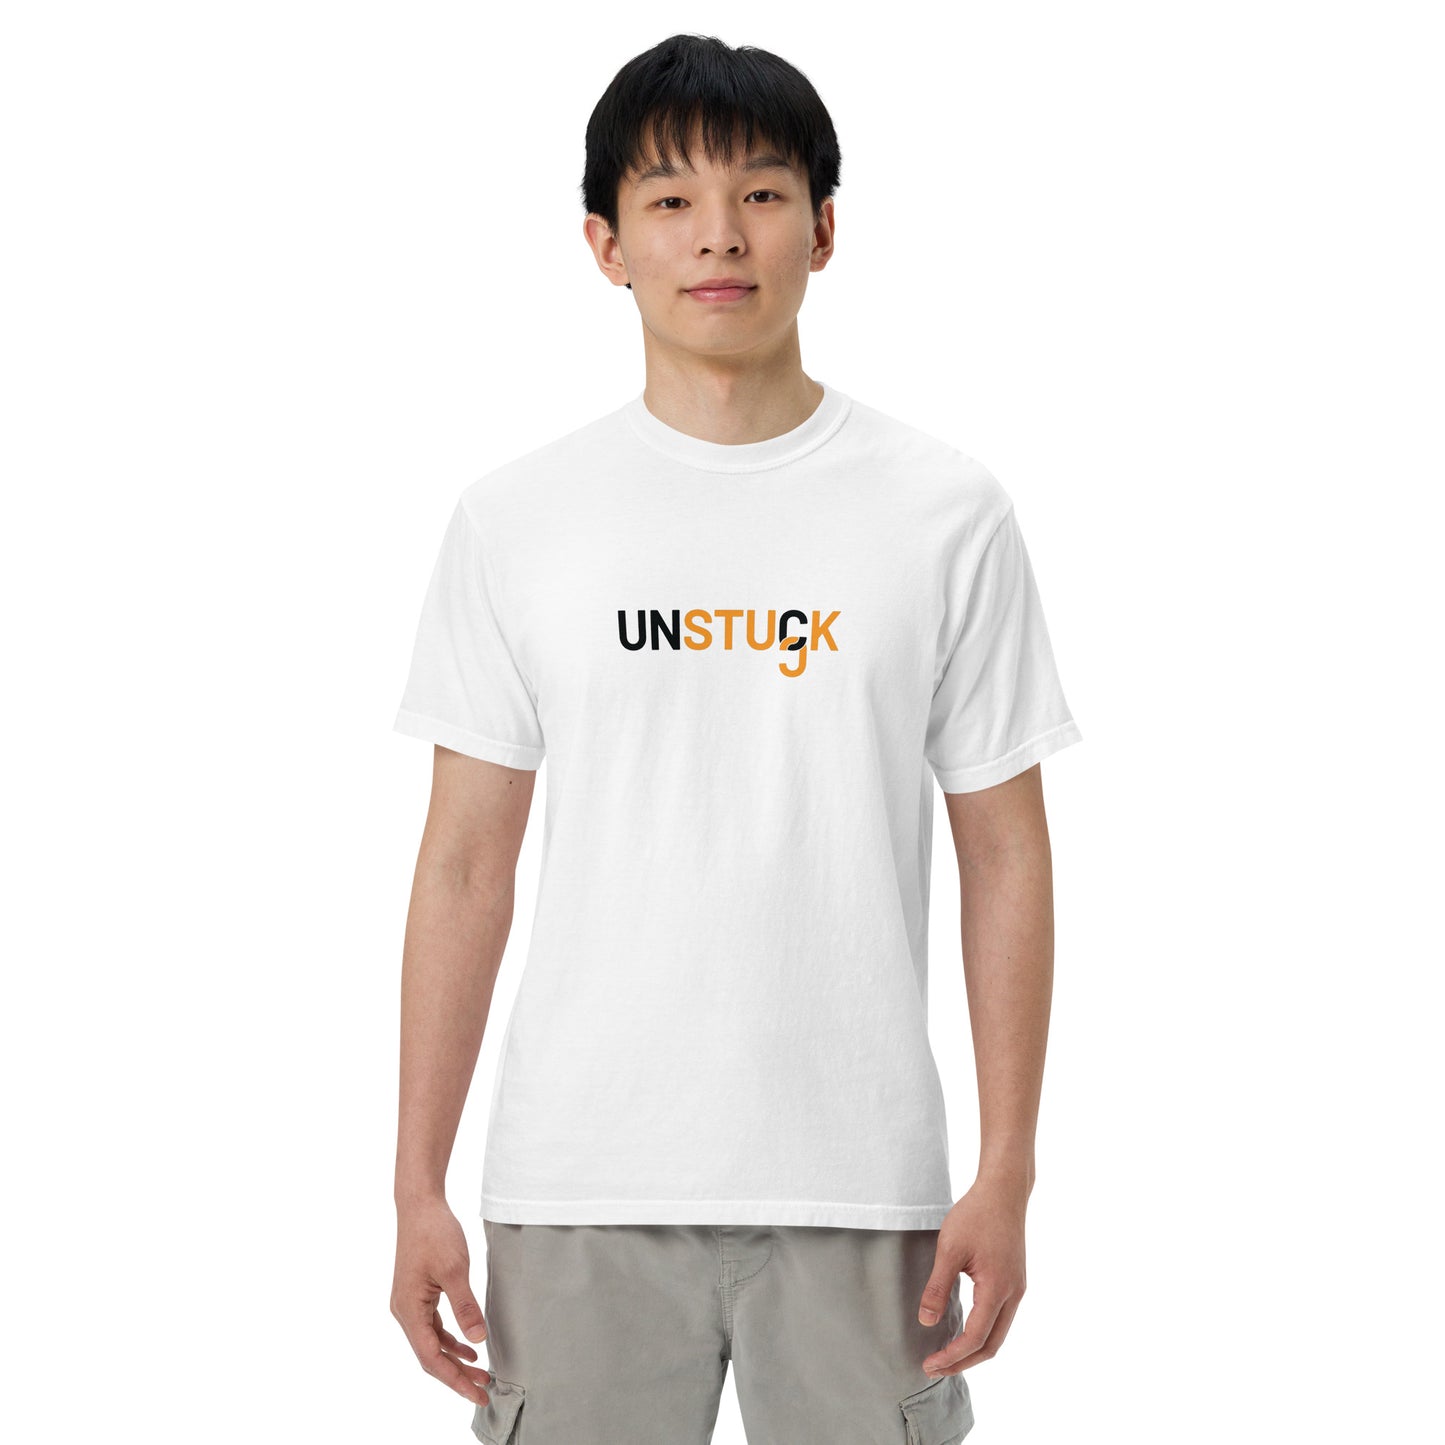 Unstuck T-shirt